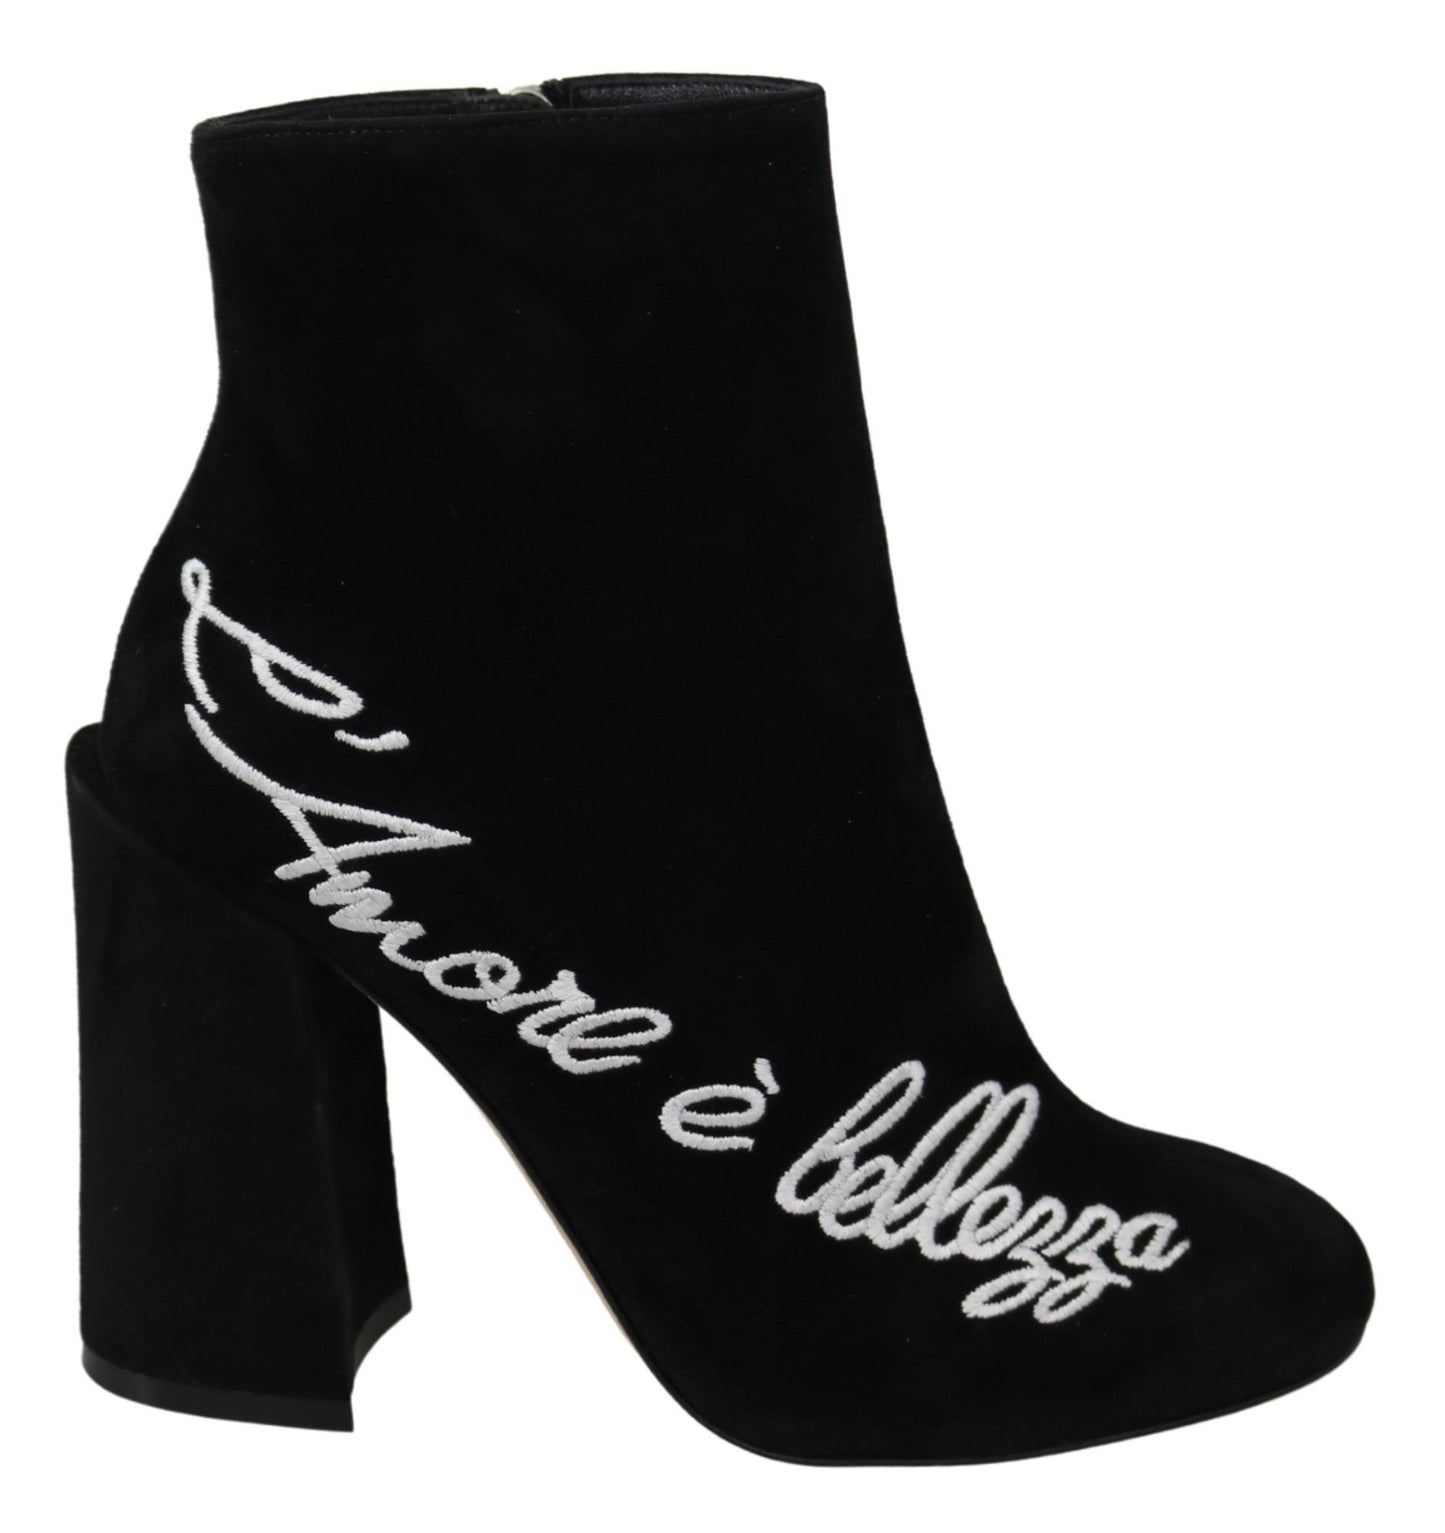 Dolce & Gabbana Black Suede L'Amore E'Bellezza Boots Shoes